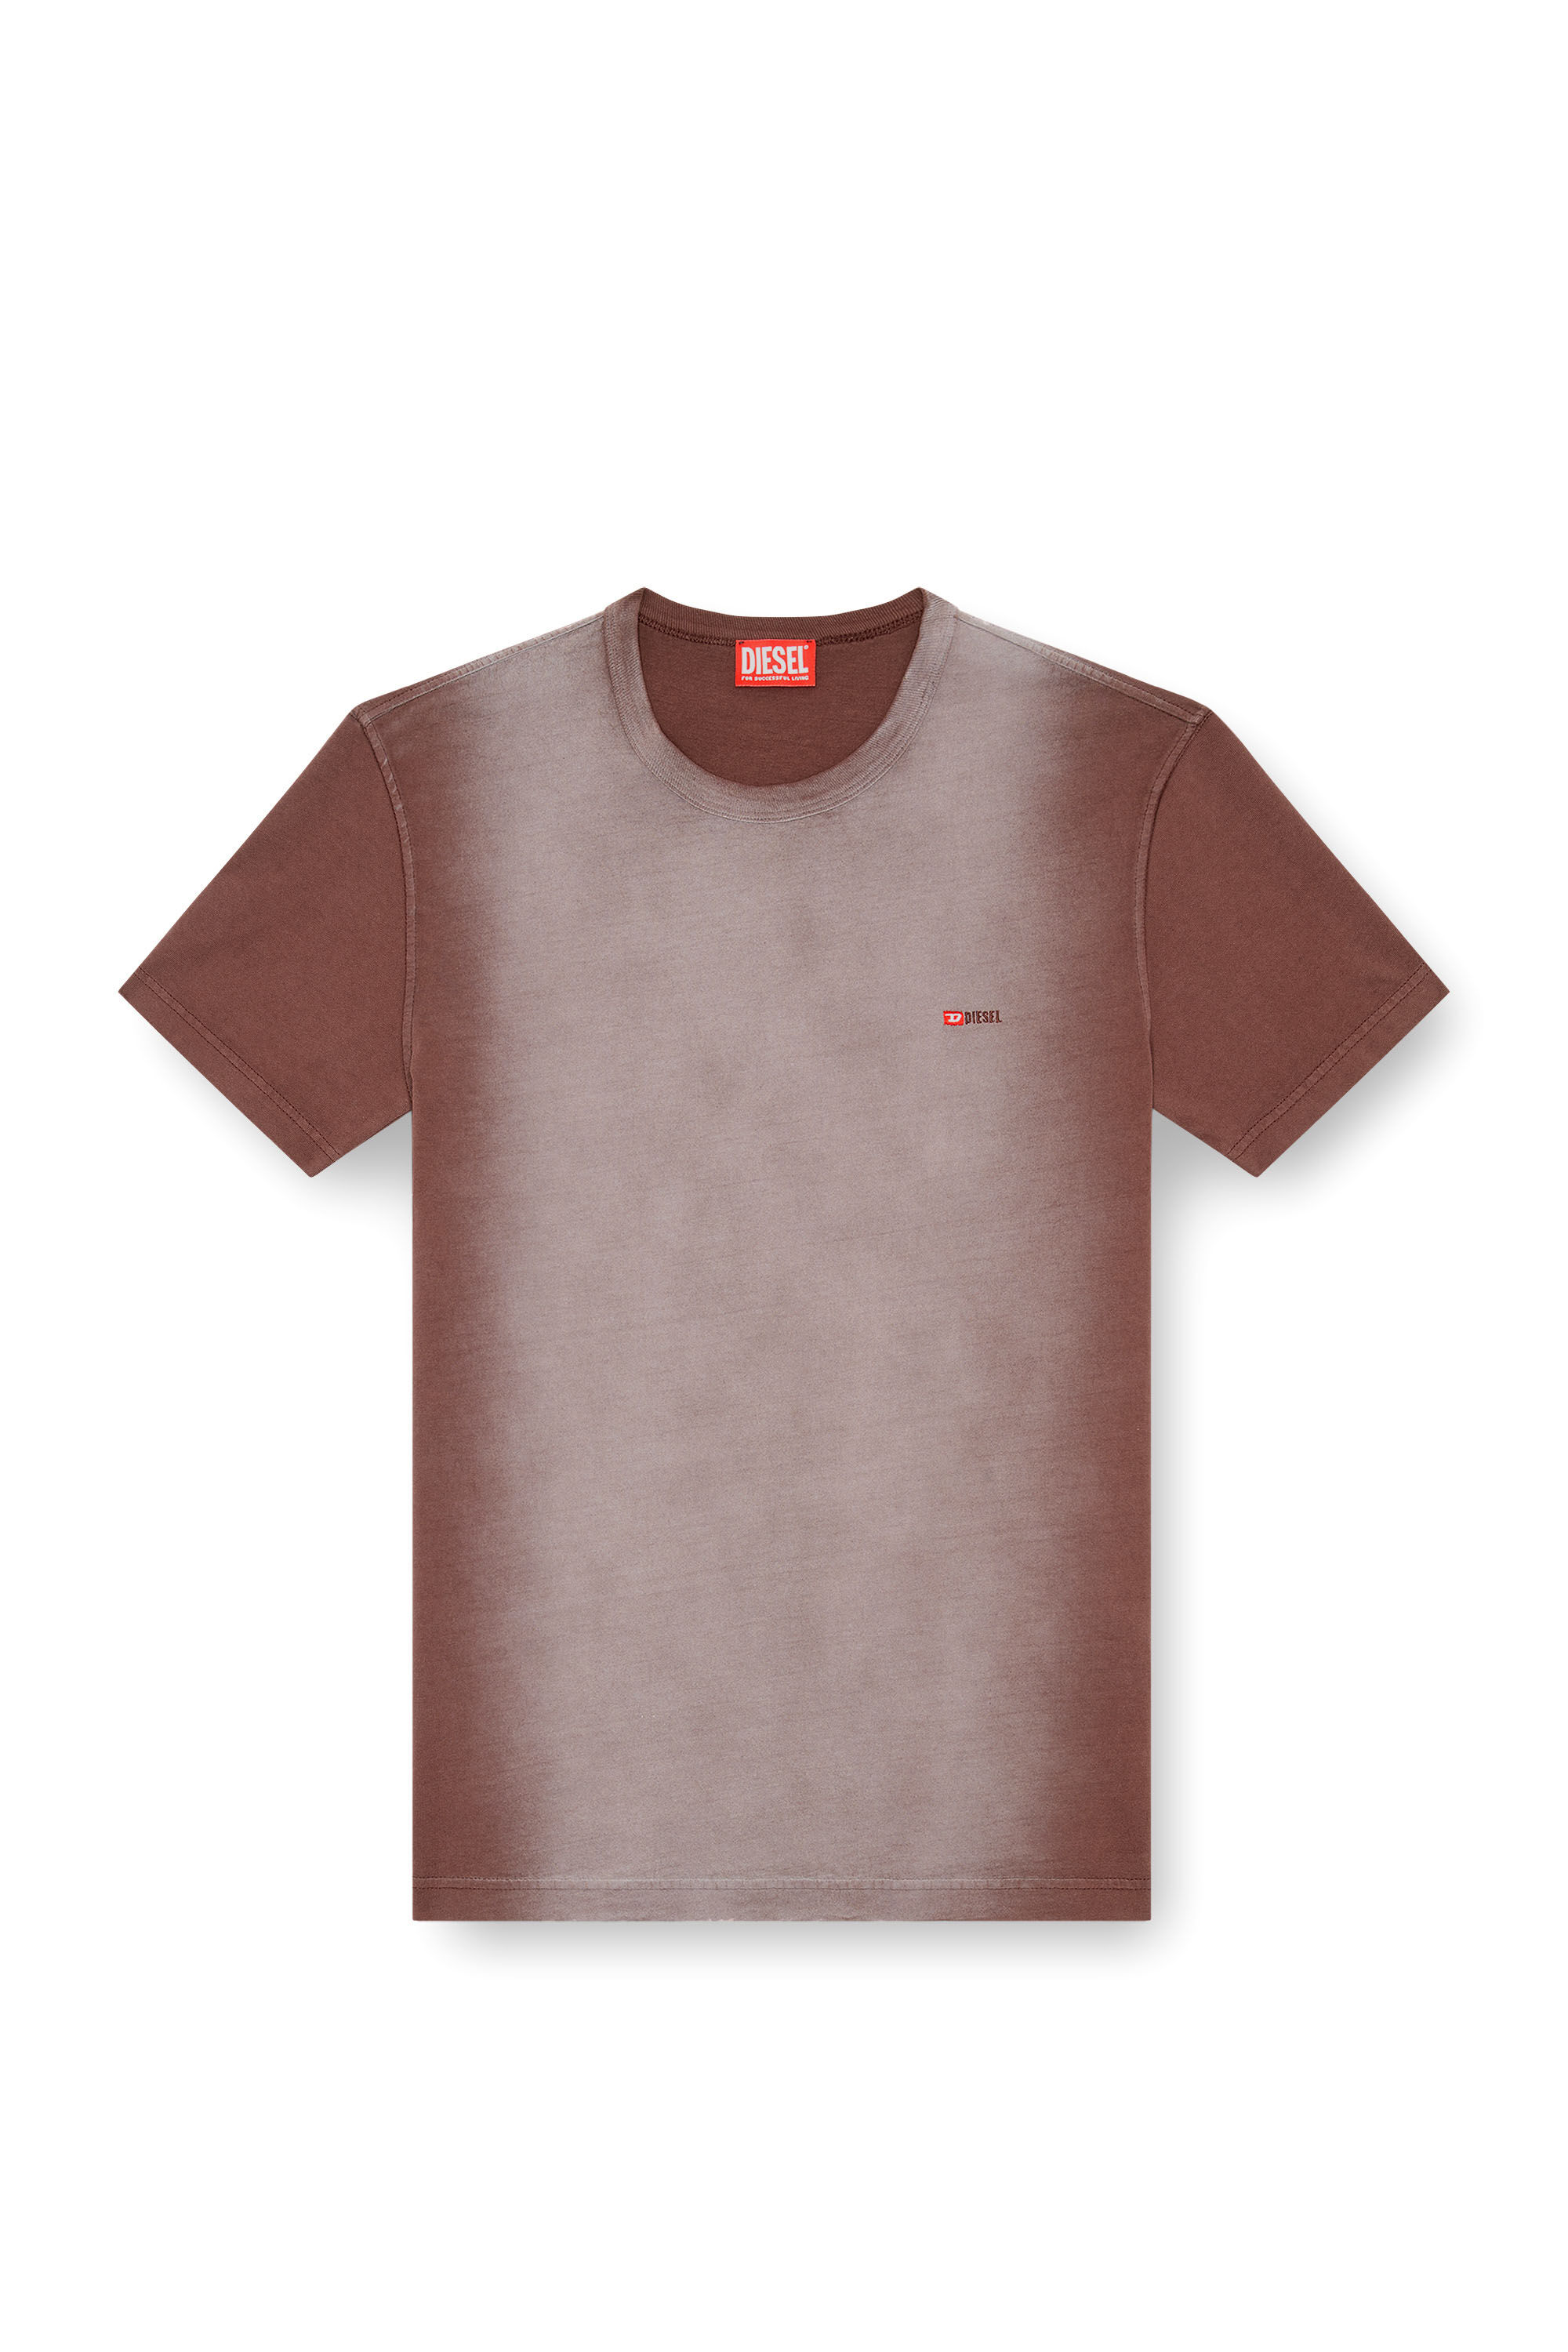 Diesel - T-ADJUST-Q2, Hombre Camiseta en tejido de algodón rociado in Marrón - Image 2